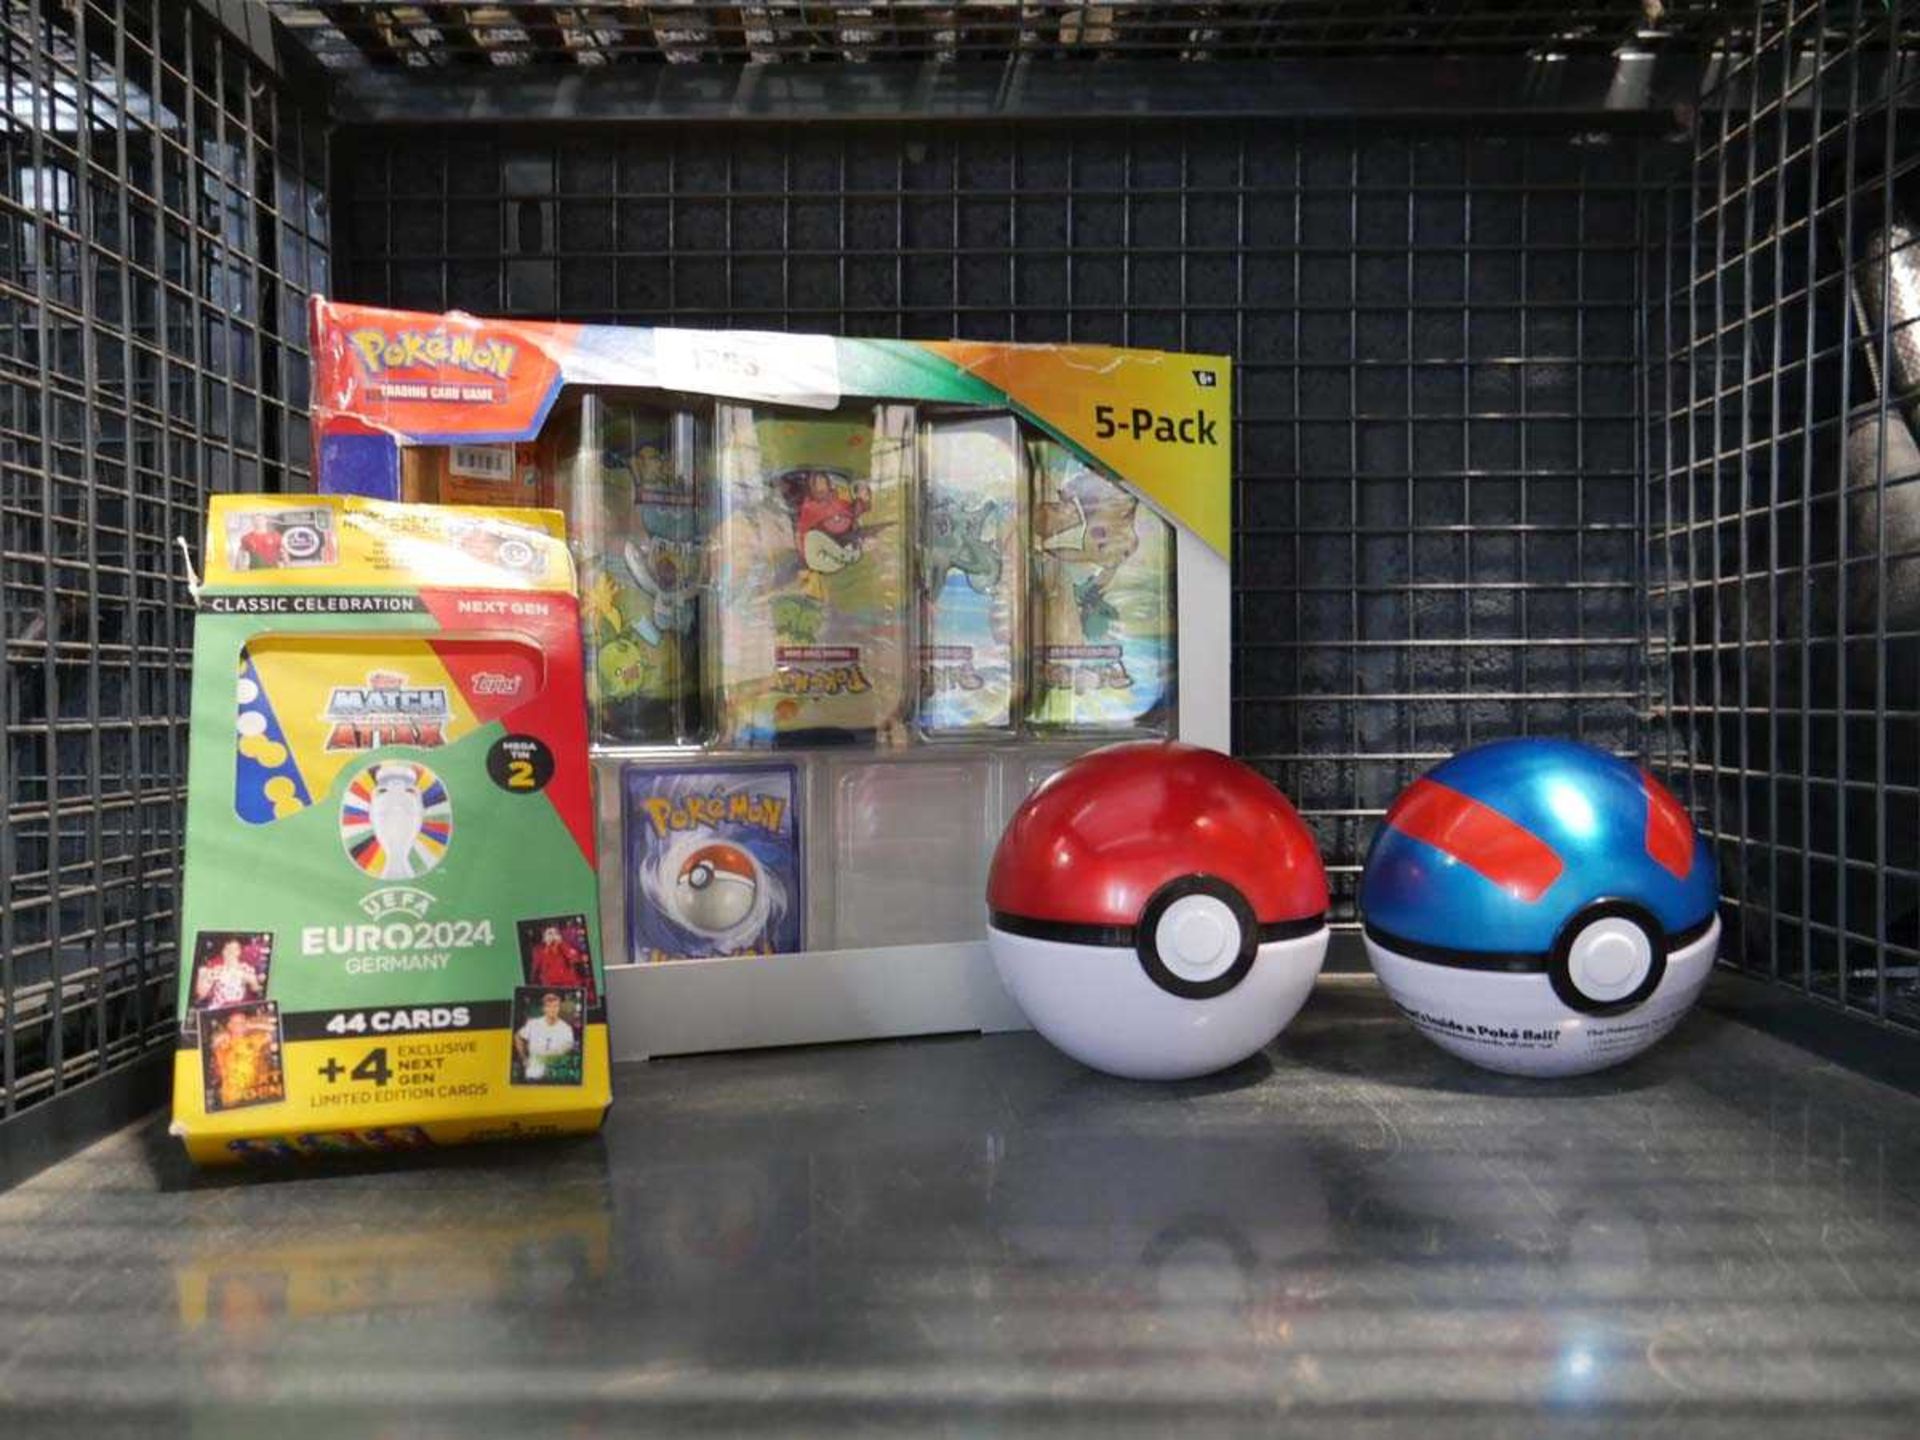 +VAT Cage containing various Pokémon card tins, 2 pokéballs and Match Attax Euro 2024 mega tin